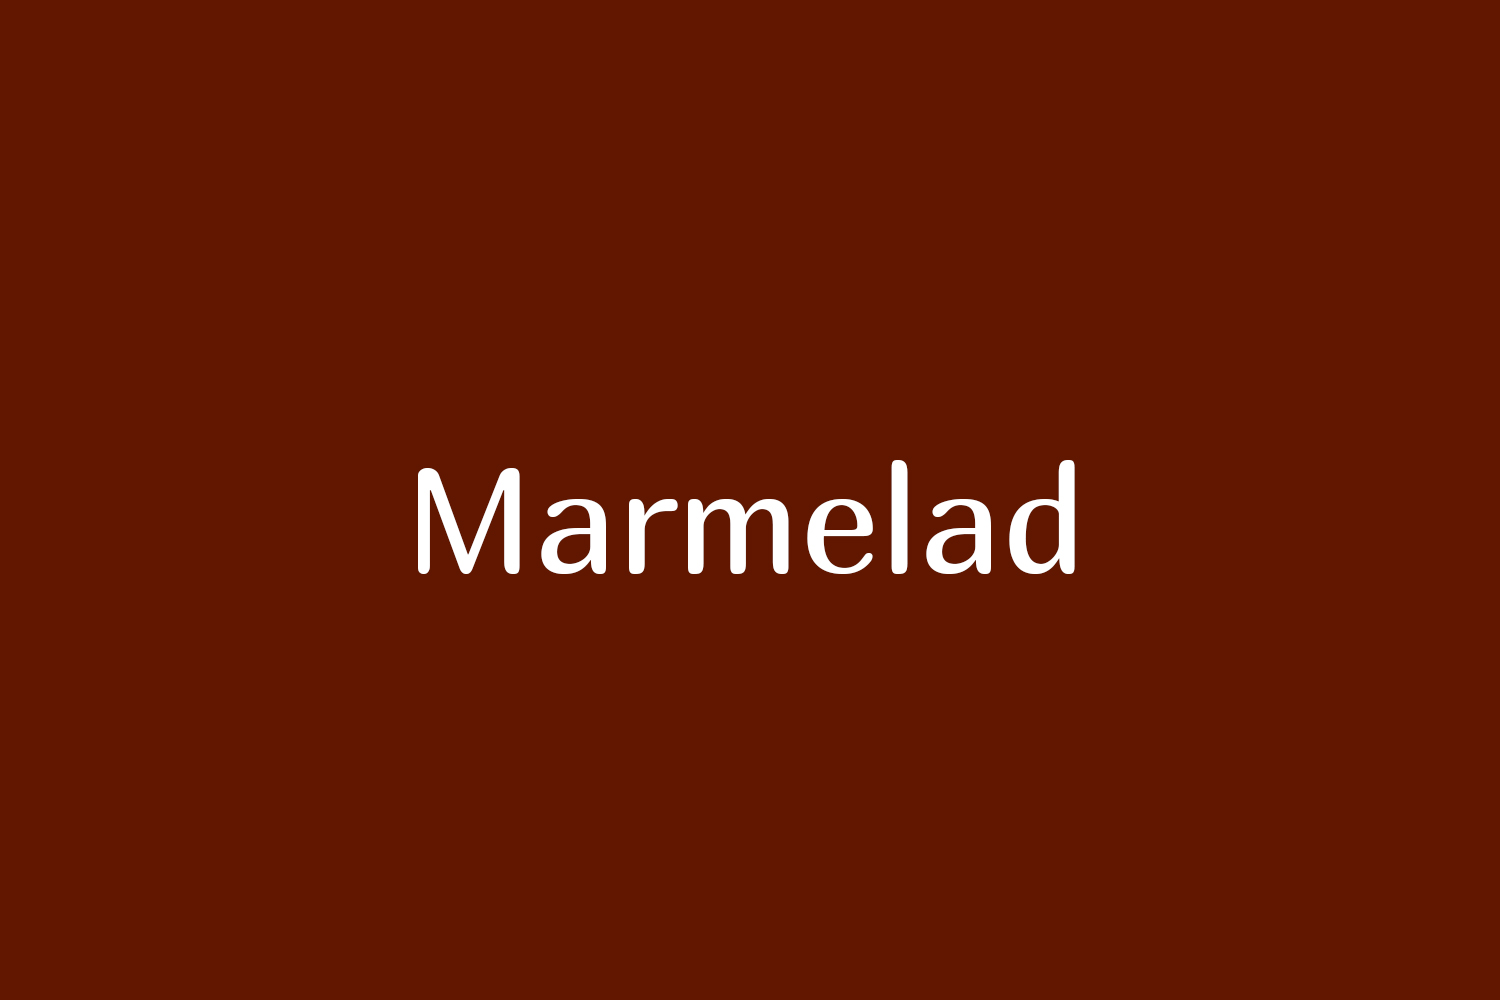 Marmelad